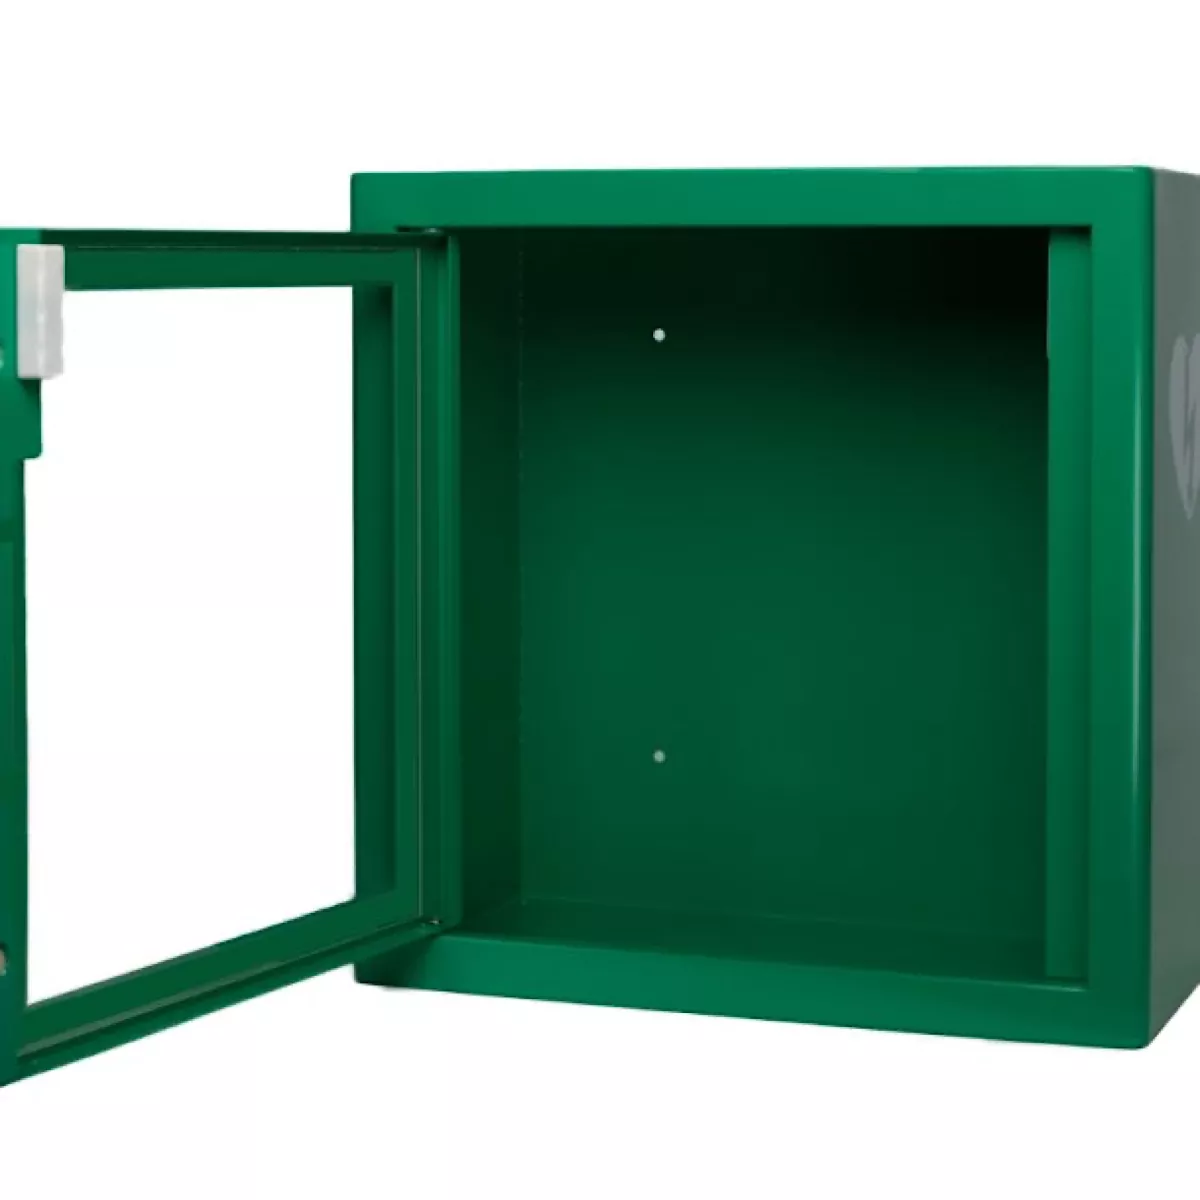 AED Wandkasten Standard für Innen, in grün, ARKY